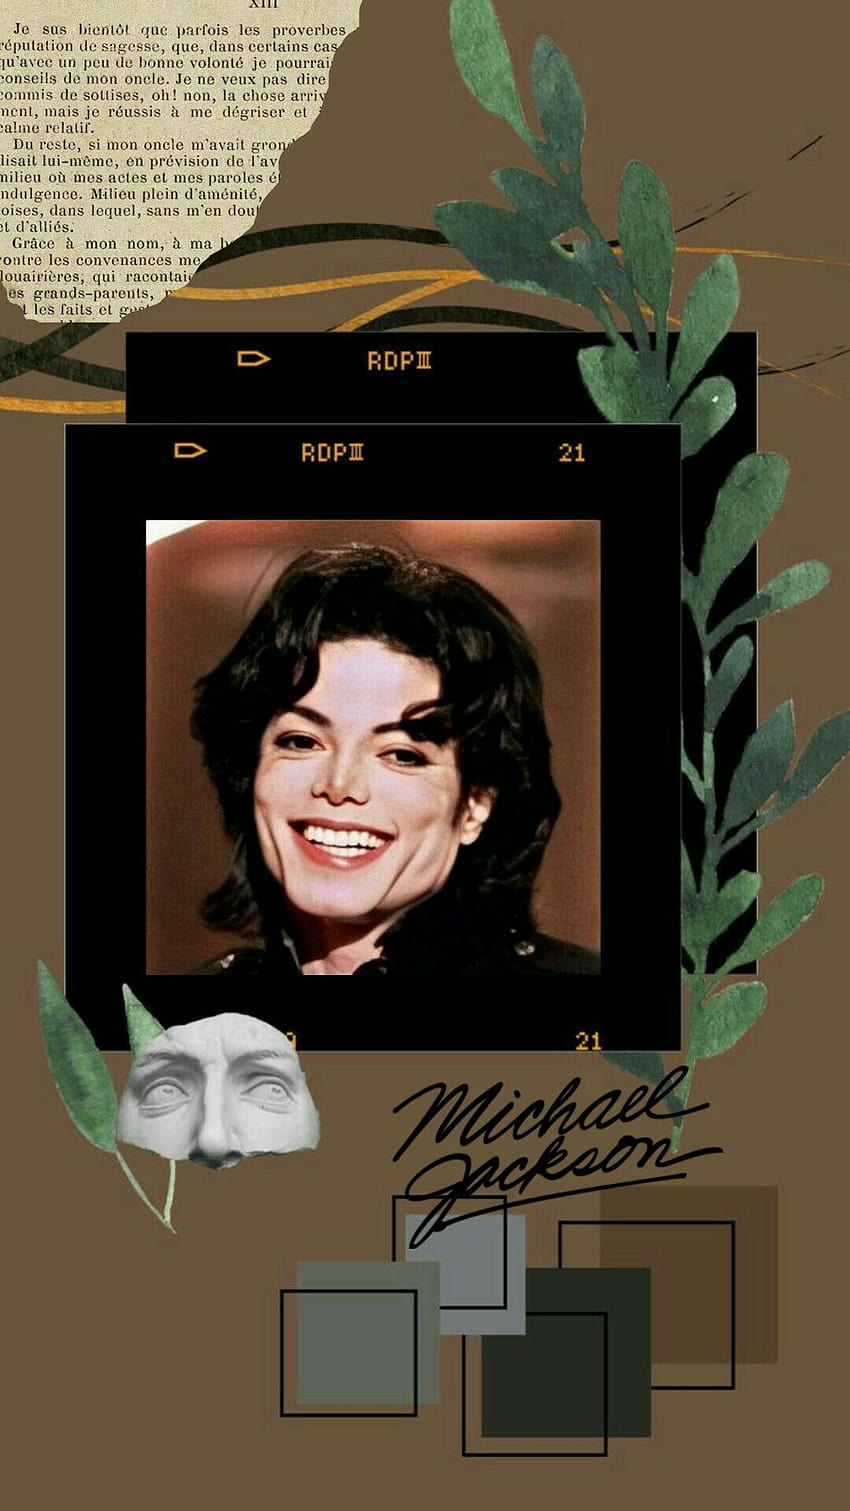 マイケル・ジャクソンの美学, 審美的なマイケル・ジャクソン HD電話の壁紙